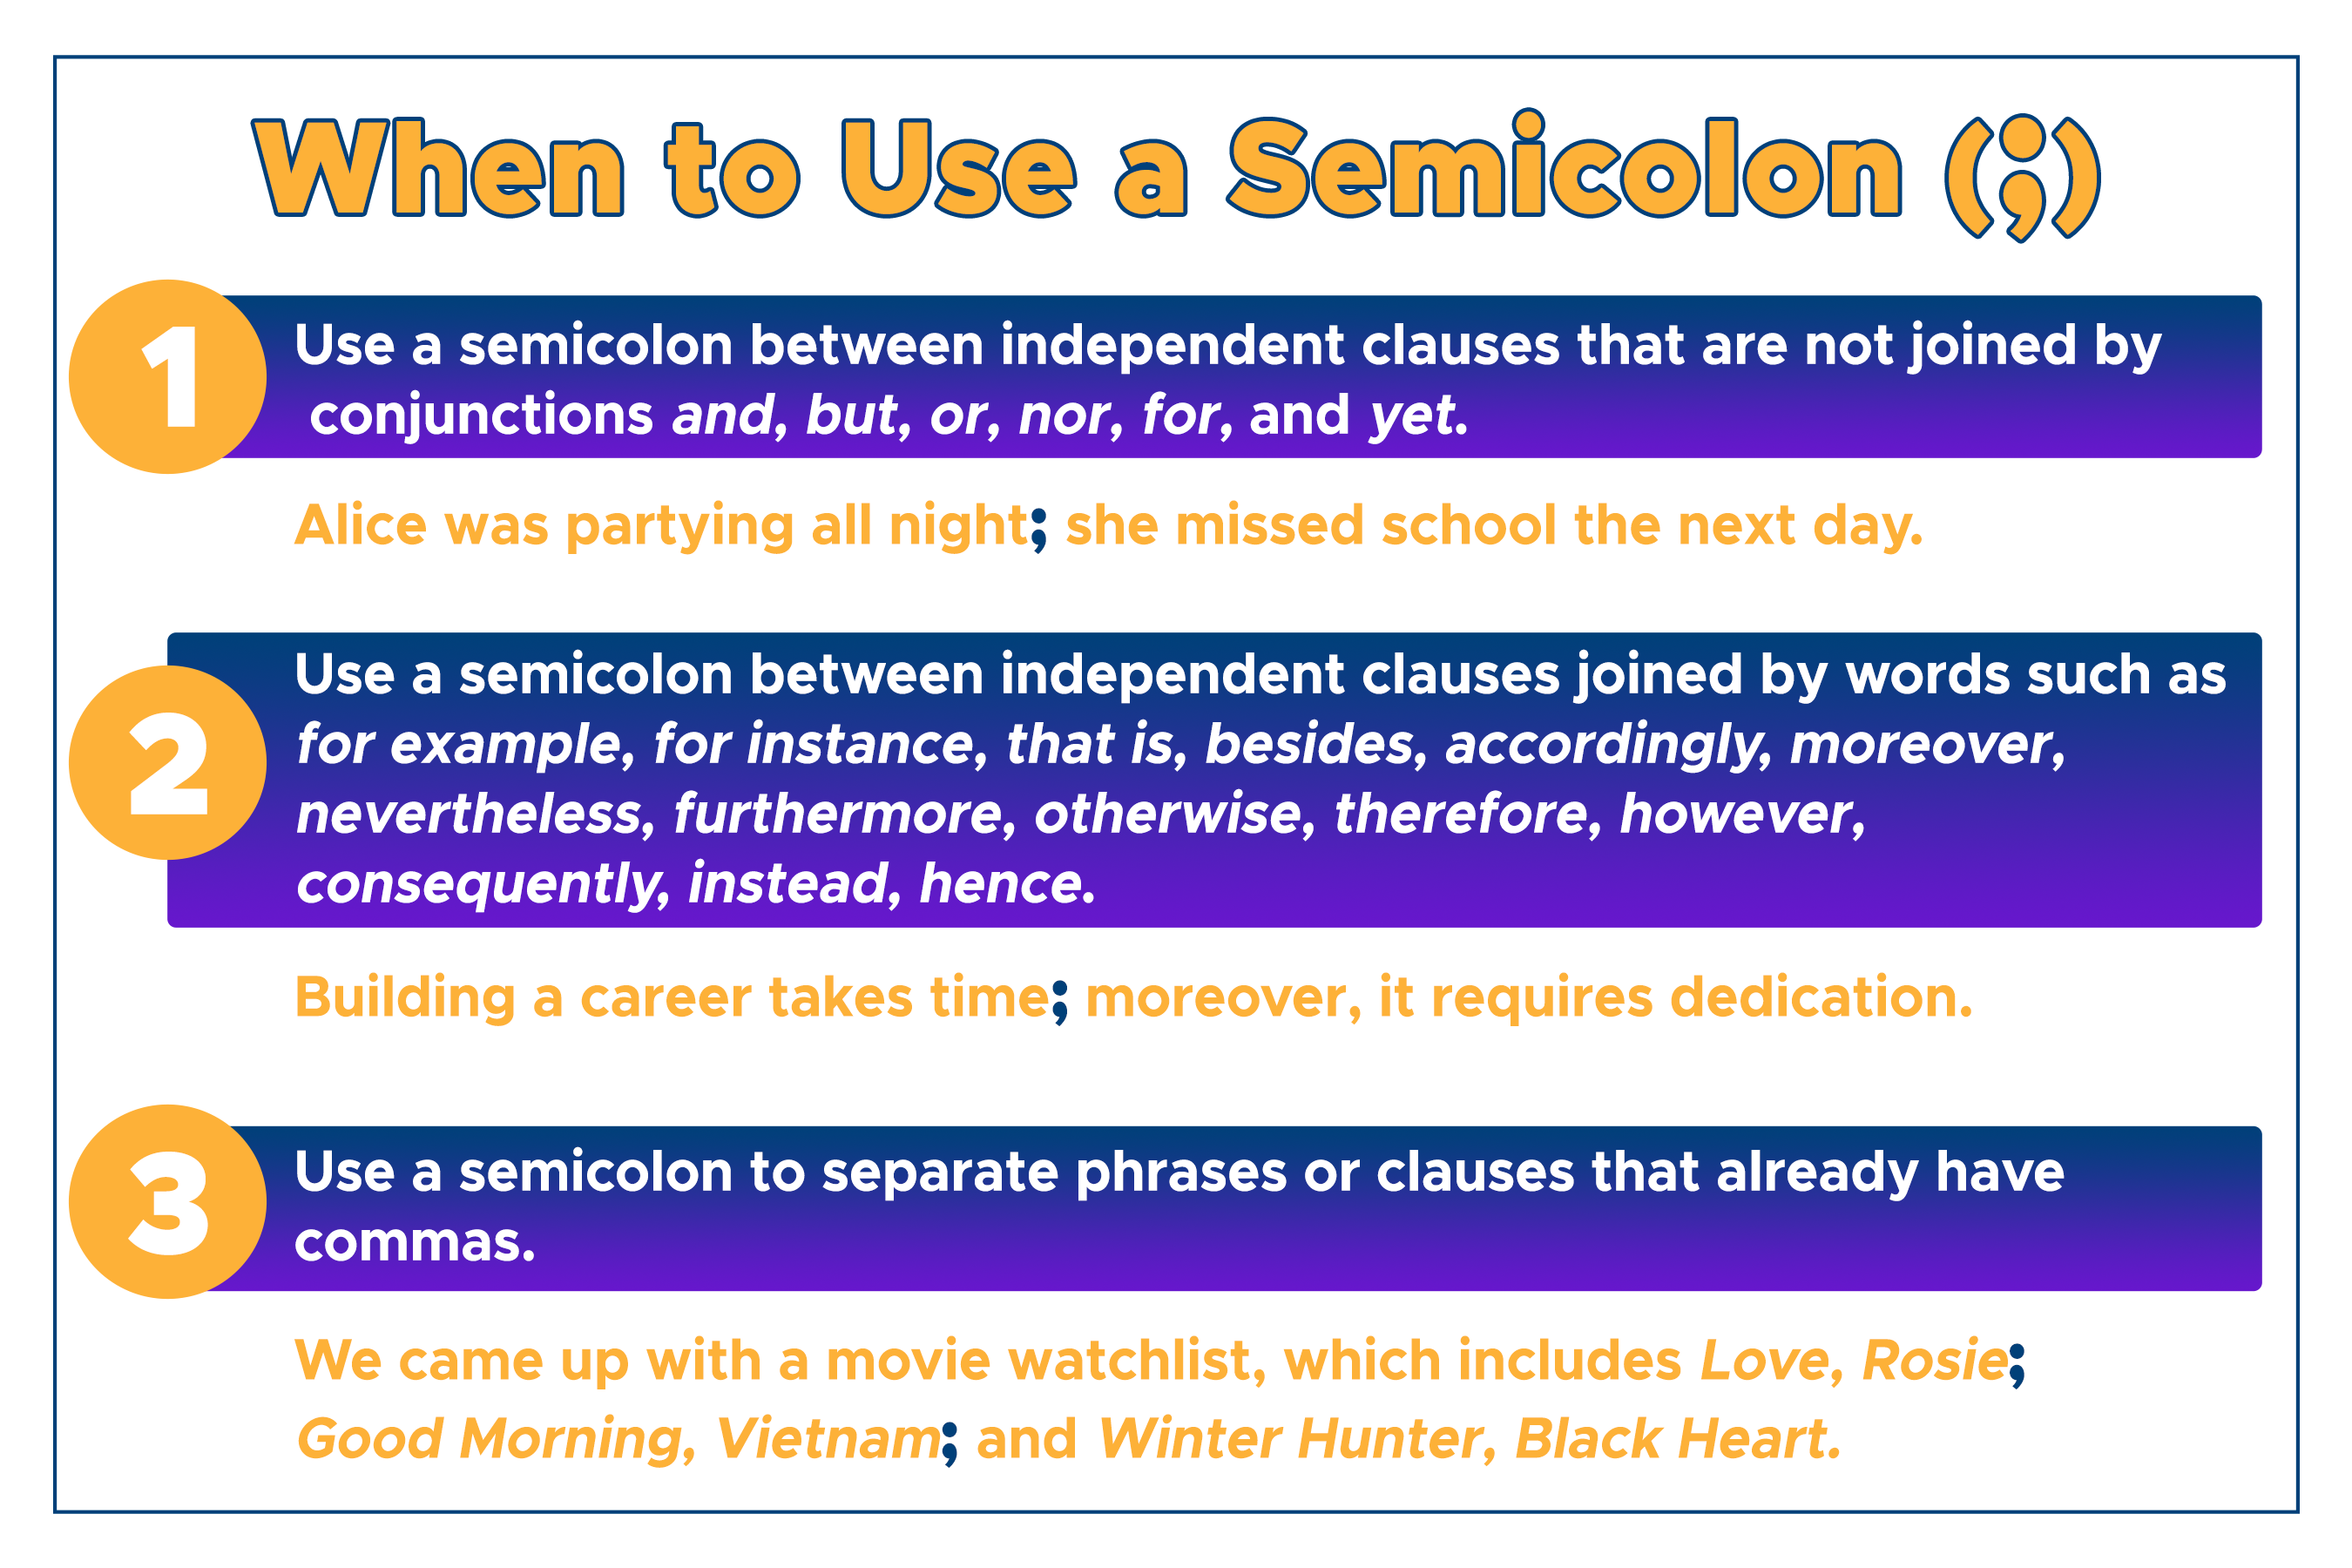 When to use a semicolon (;)